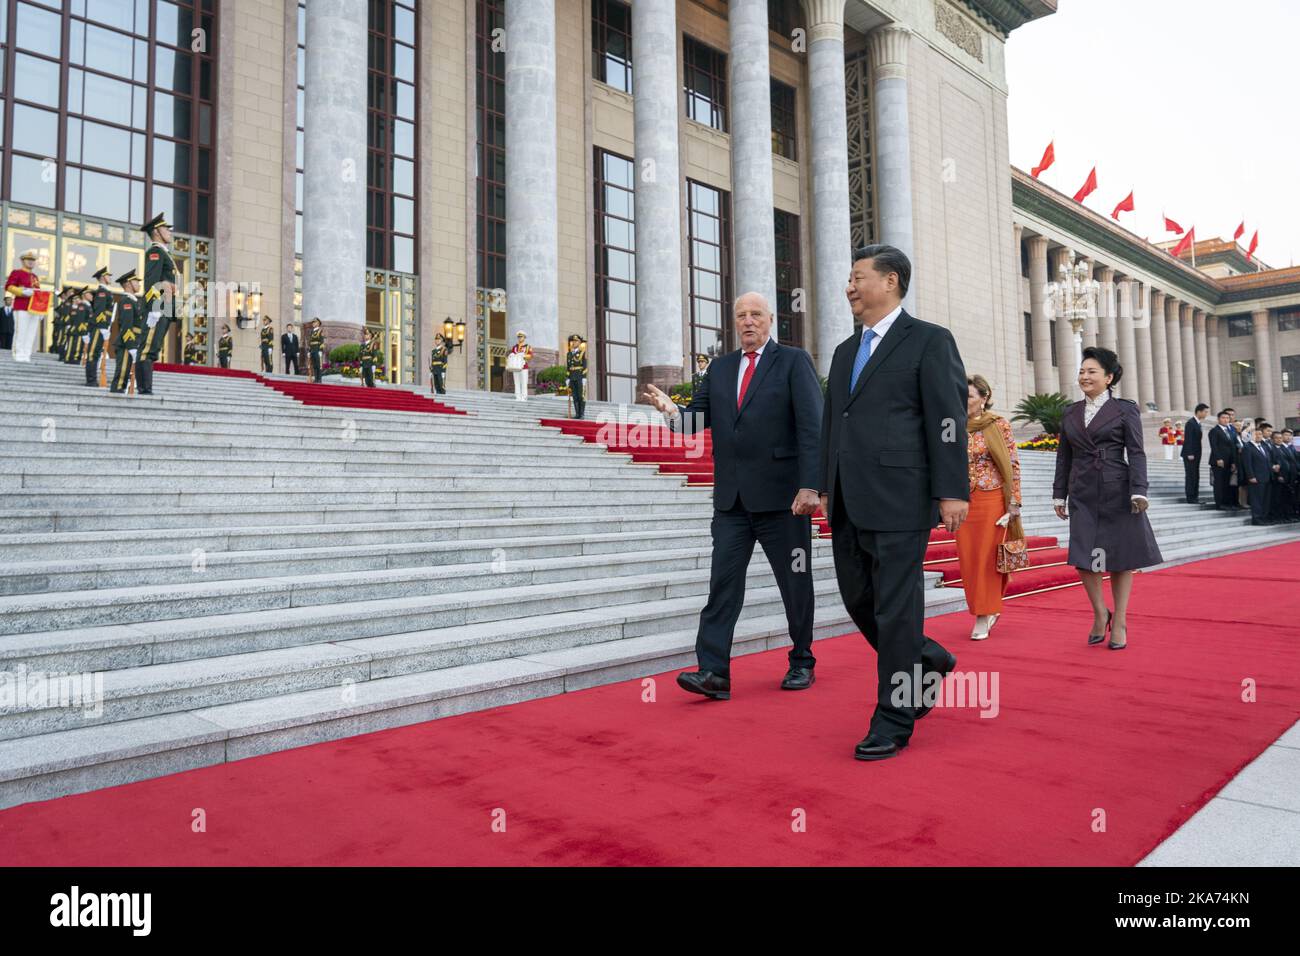 Pechino, Cina 20181016. Il re Harald e la regina Sonja sono stati accolti dal presidente cinese Xi Jinping e dal Premier Peng Liyuan durante la cerimonia di benvenuto ufficiale fuori dalla Sala Grande del Popolo a Pechino, martedì. Foto: Heiko Junge / NTB scanpi Foto Stock